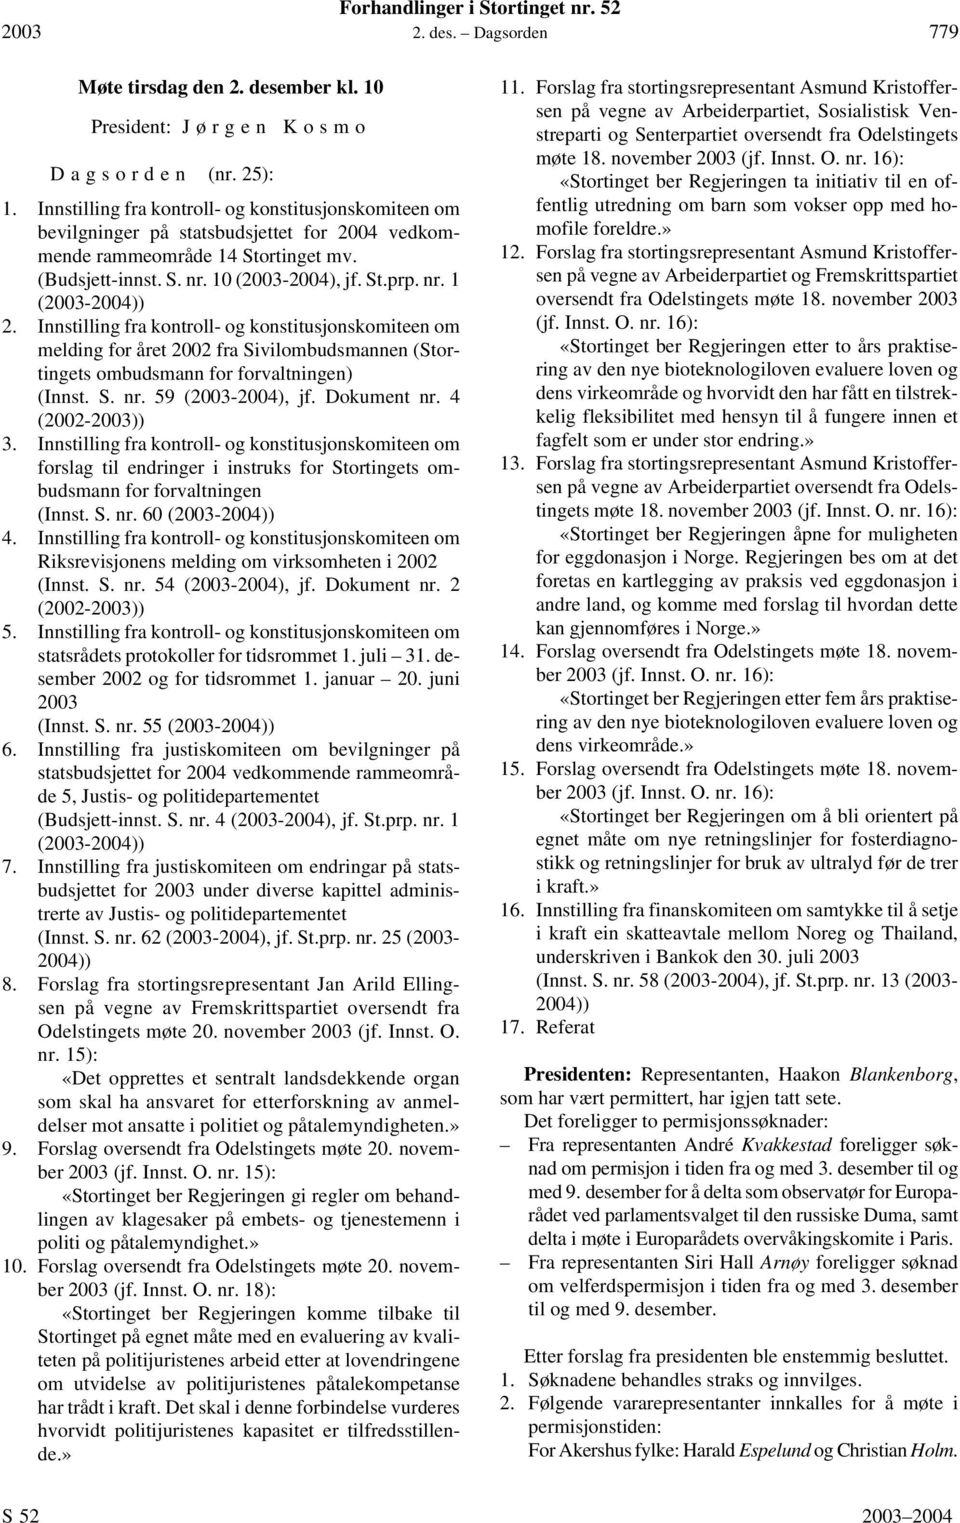 Innstilling fra kontroll- og konstitusjonskomiteen om melding for året 2002 fra Sivilombudsmannen (Stortingets ombudsmann for forvaltningen) (Innst. S. nr. 59 (2003-2004), jf. Dokument nr.